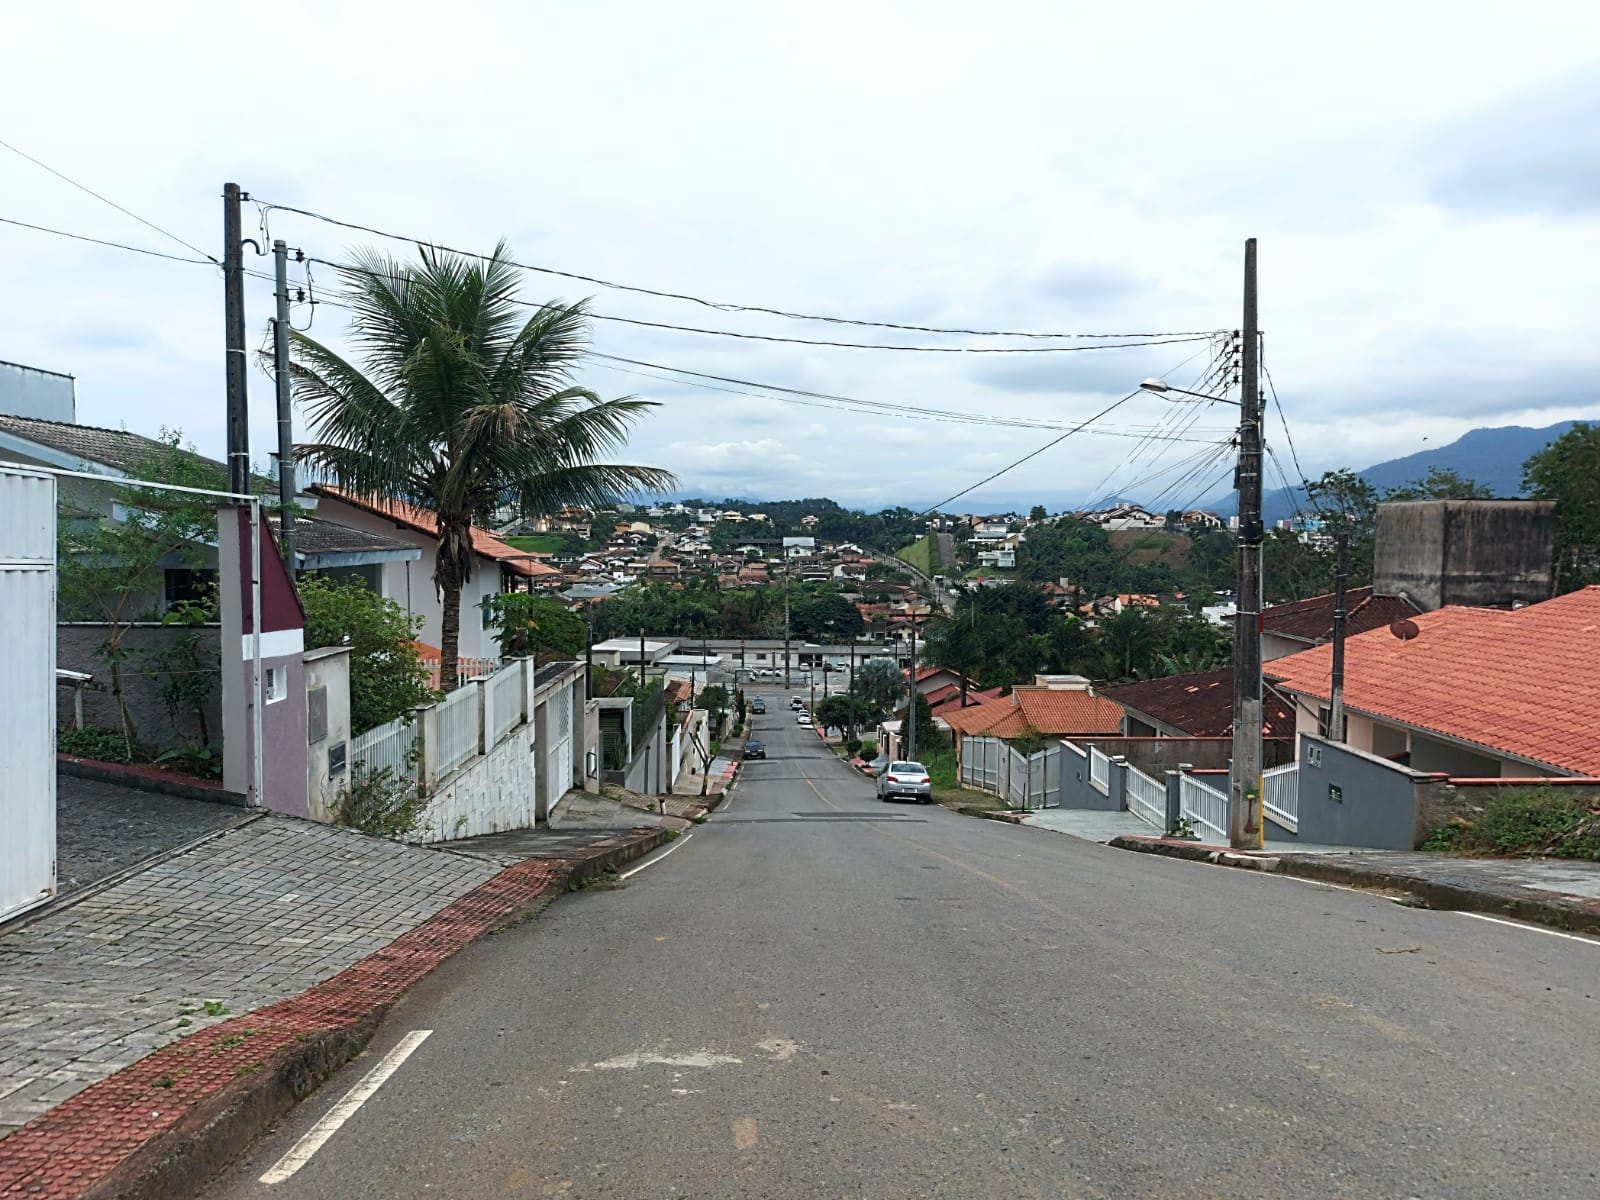 Ocorrência foi registrada na rua André Vitkowki, no bairro Barra do Rio Molha | Foto: Fábio Junkes/OCP News